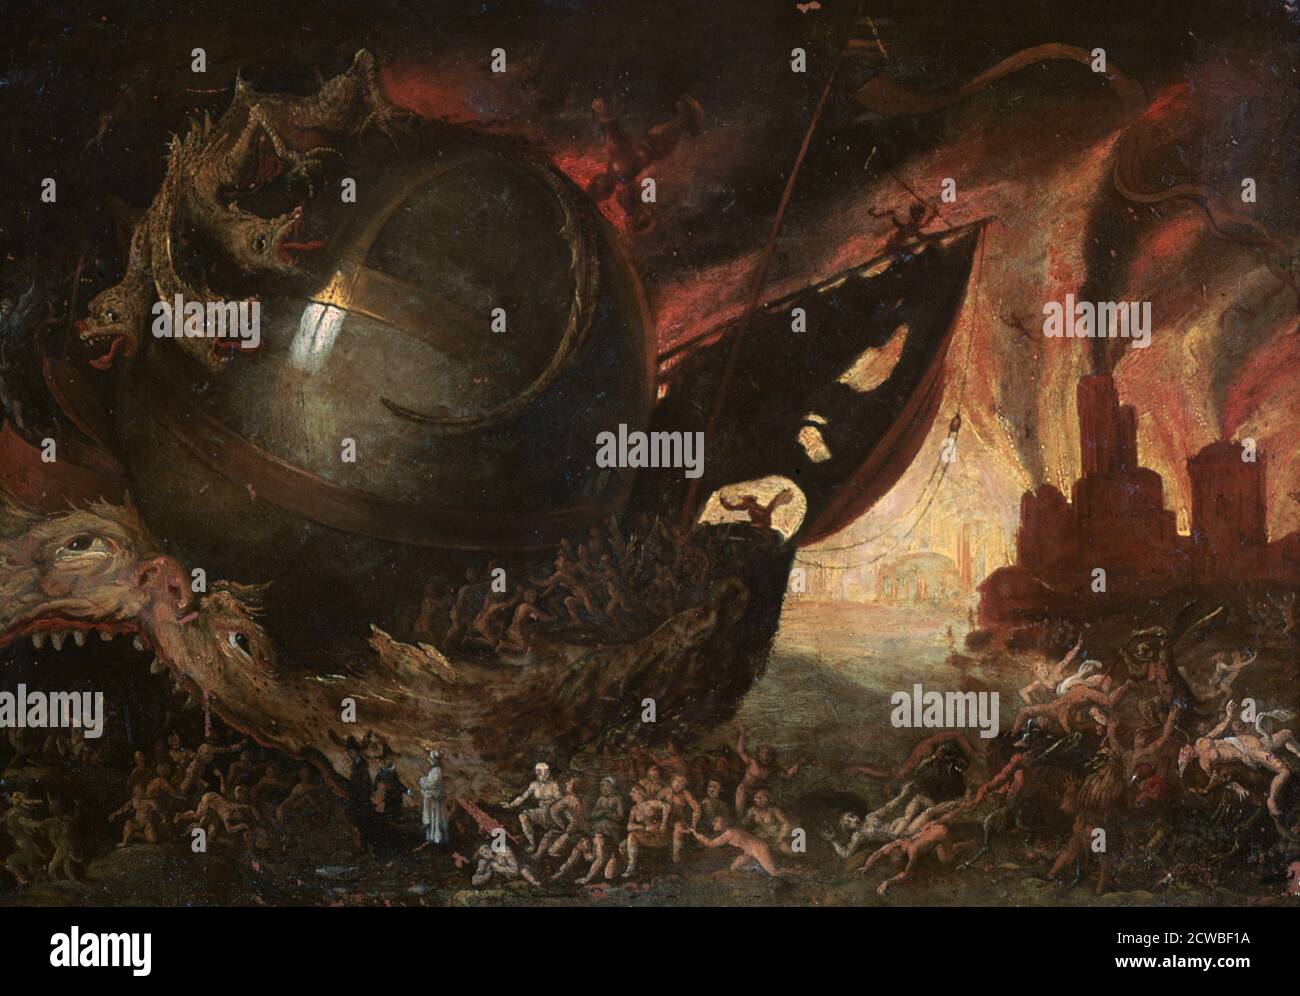 La Traversee du Styx', c1591-1638 Artist: Jacob Isaacz van Swanenburg. Nella mitologia greca, Styx è il nome di un fiume che ha formato il confine tra la terra e il mondo sotterraneo, Hades. Foto Stock